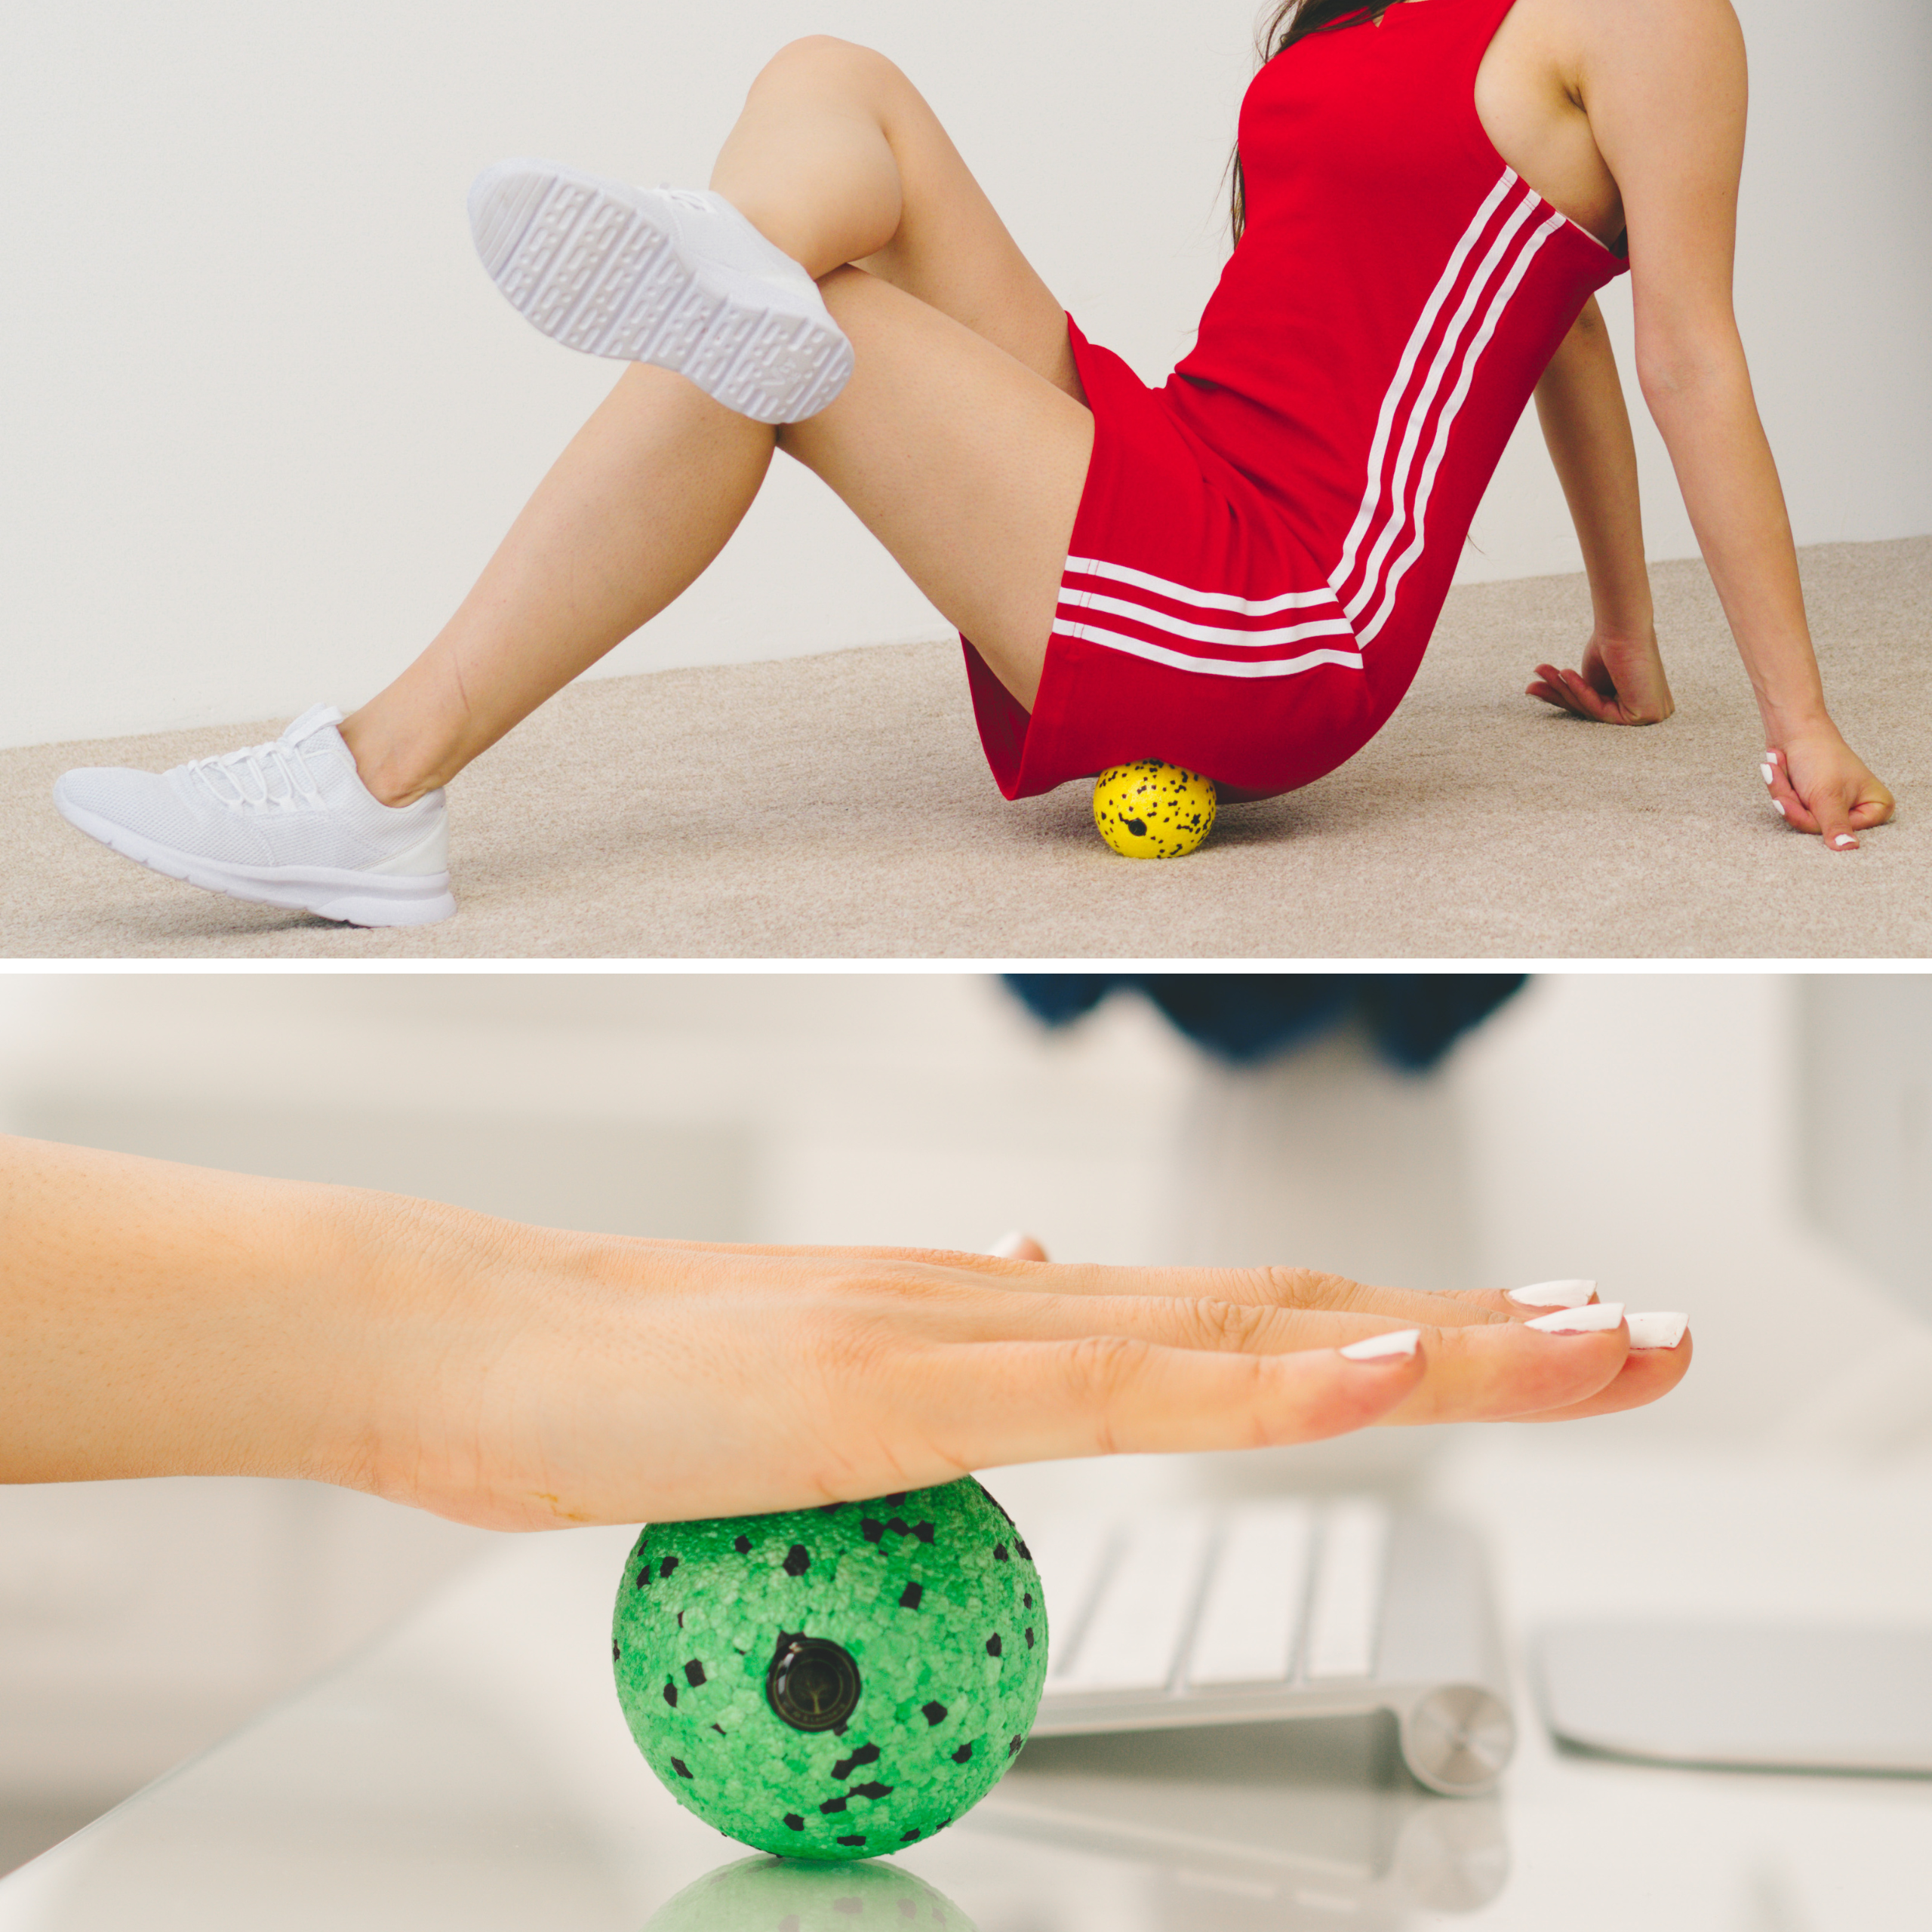 Oberes Bild: Frau benutzt einen gelben Faszienball für eine Rückenmassage. Unteres Bild: Hand drückt auf grünen Faszienball für Handmassage.